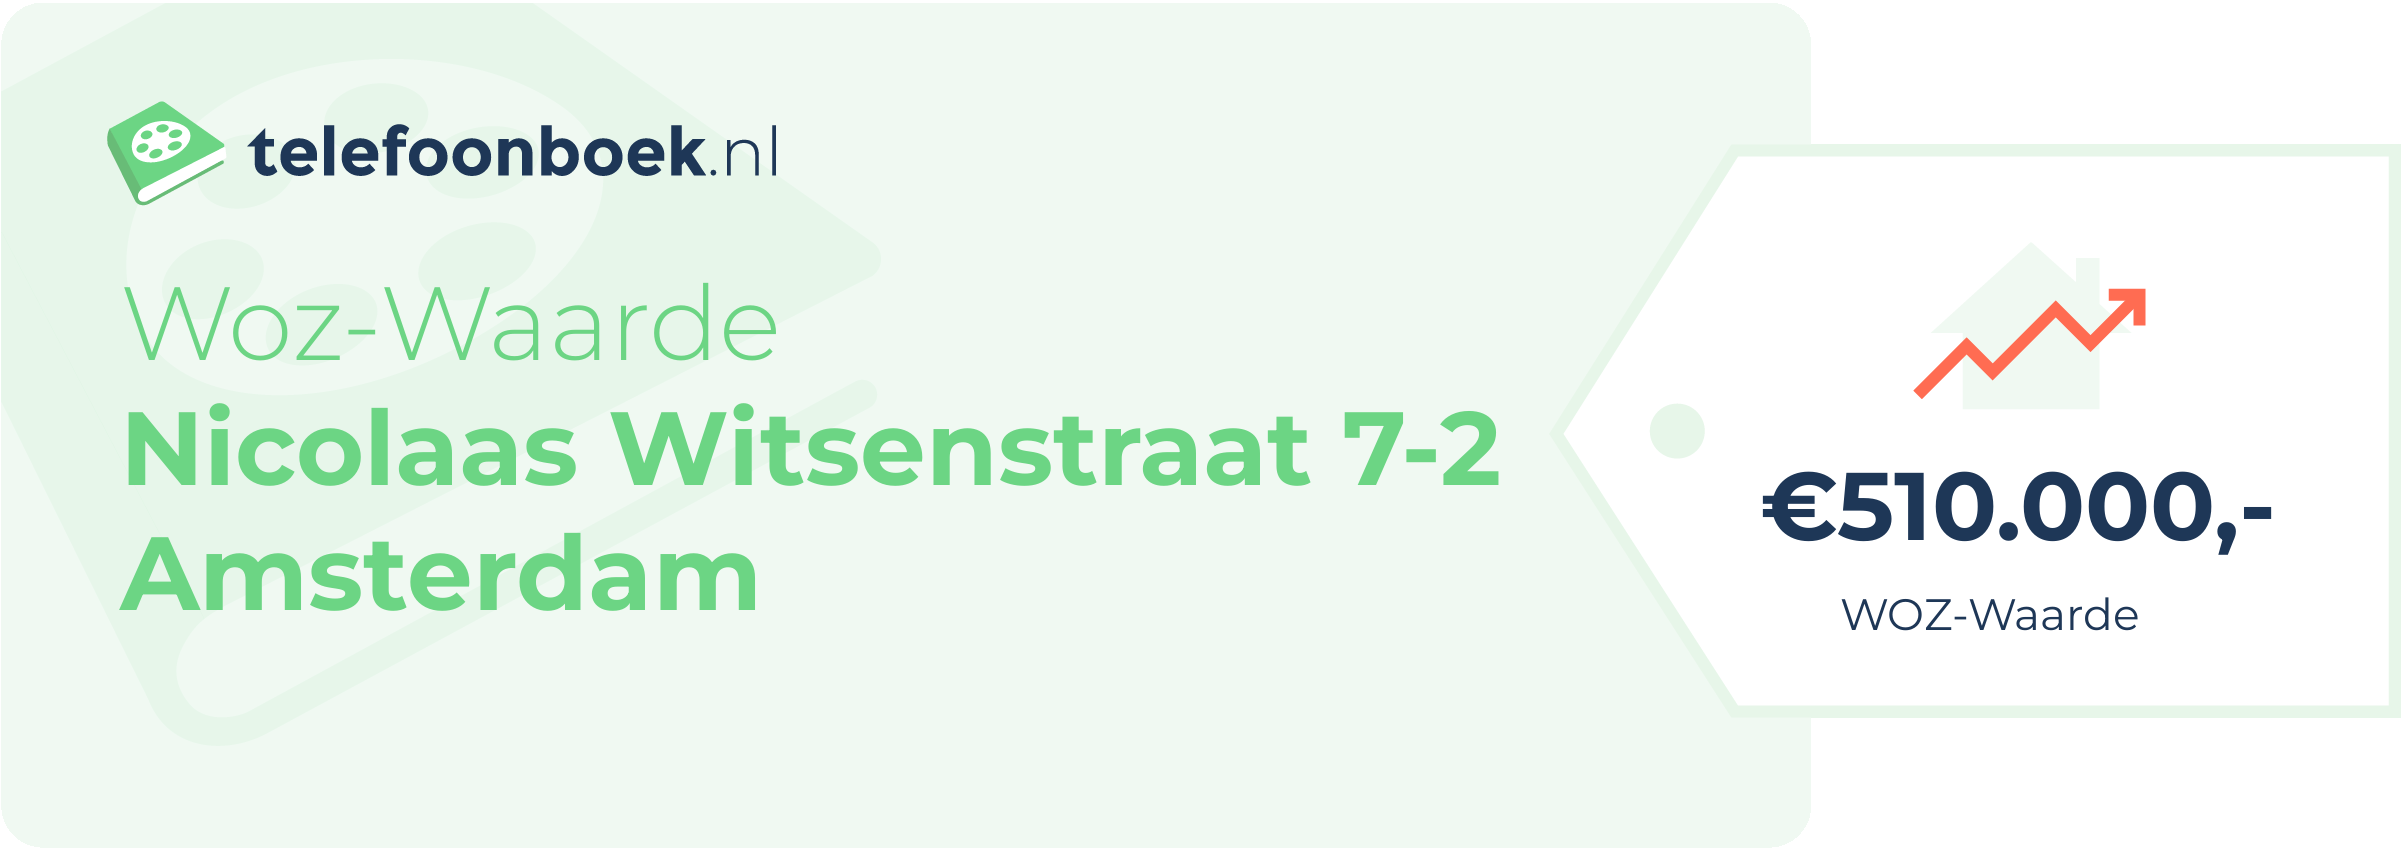 WOZ-waarde Nicolaas Witsenstraat 7-2 Amsterdam